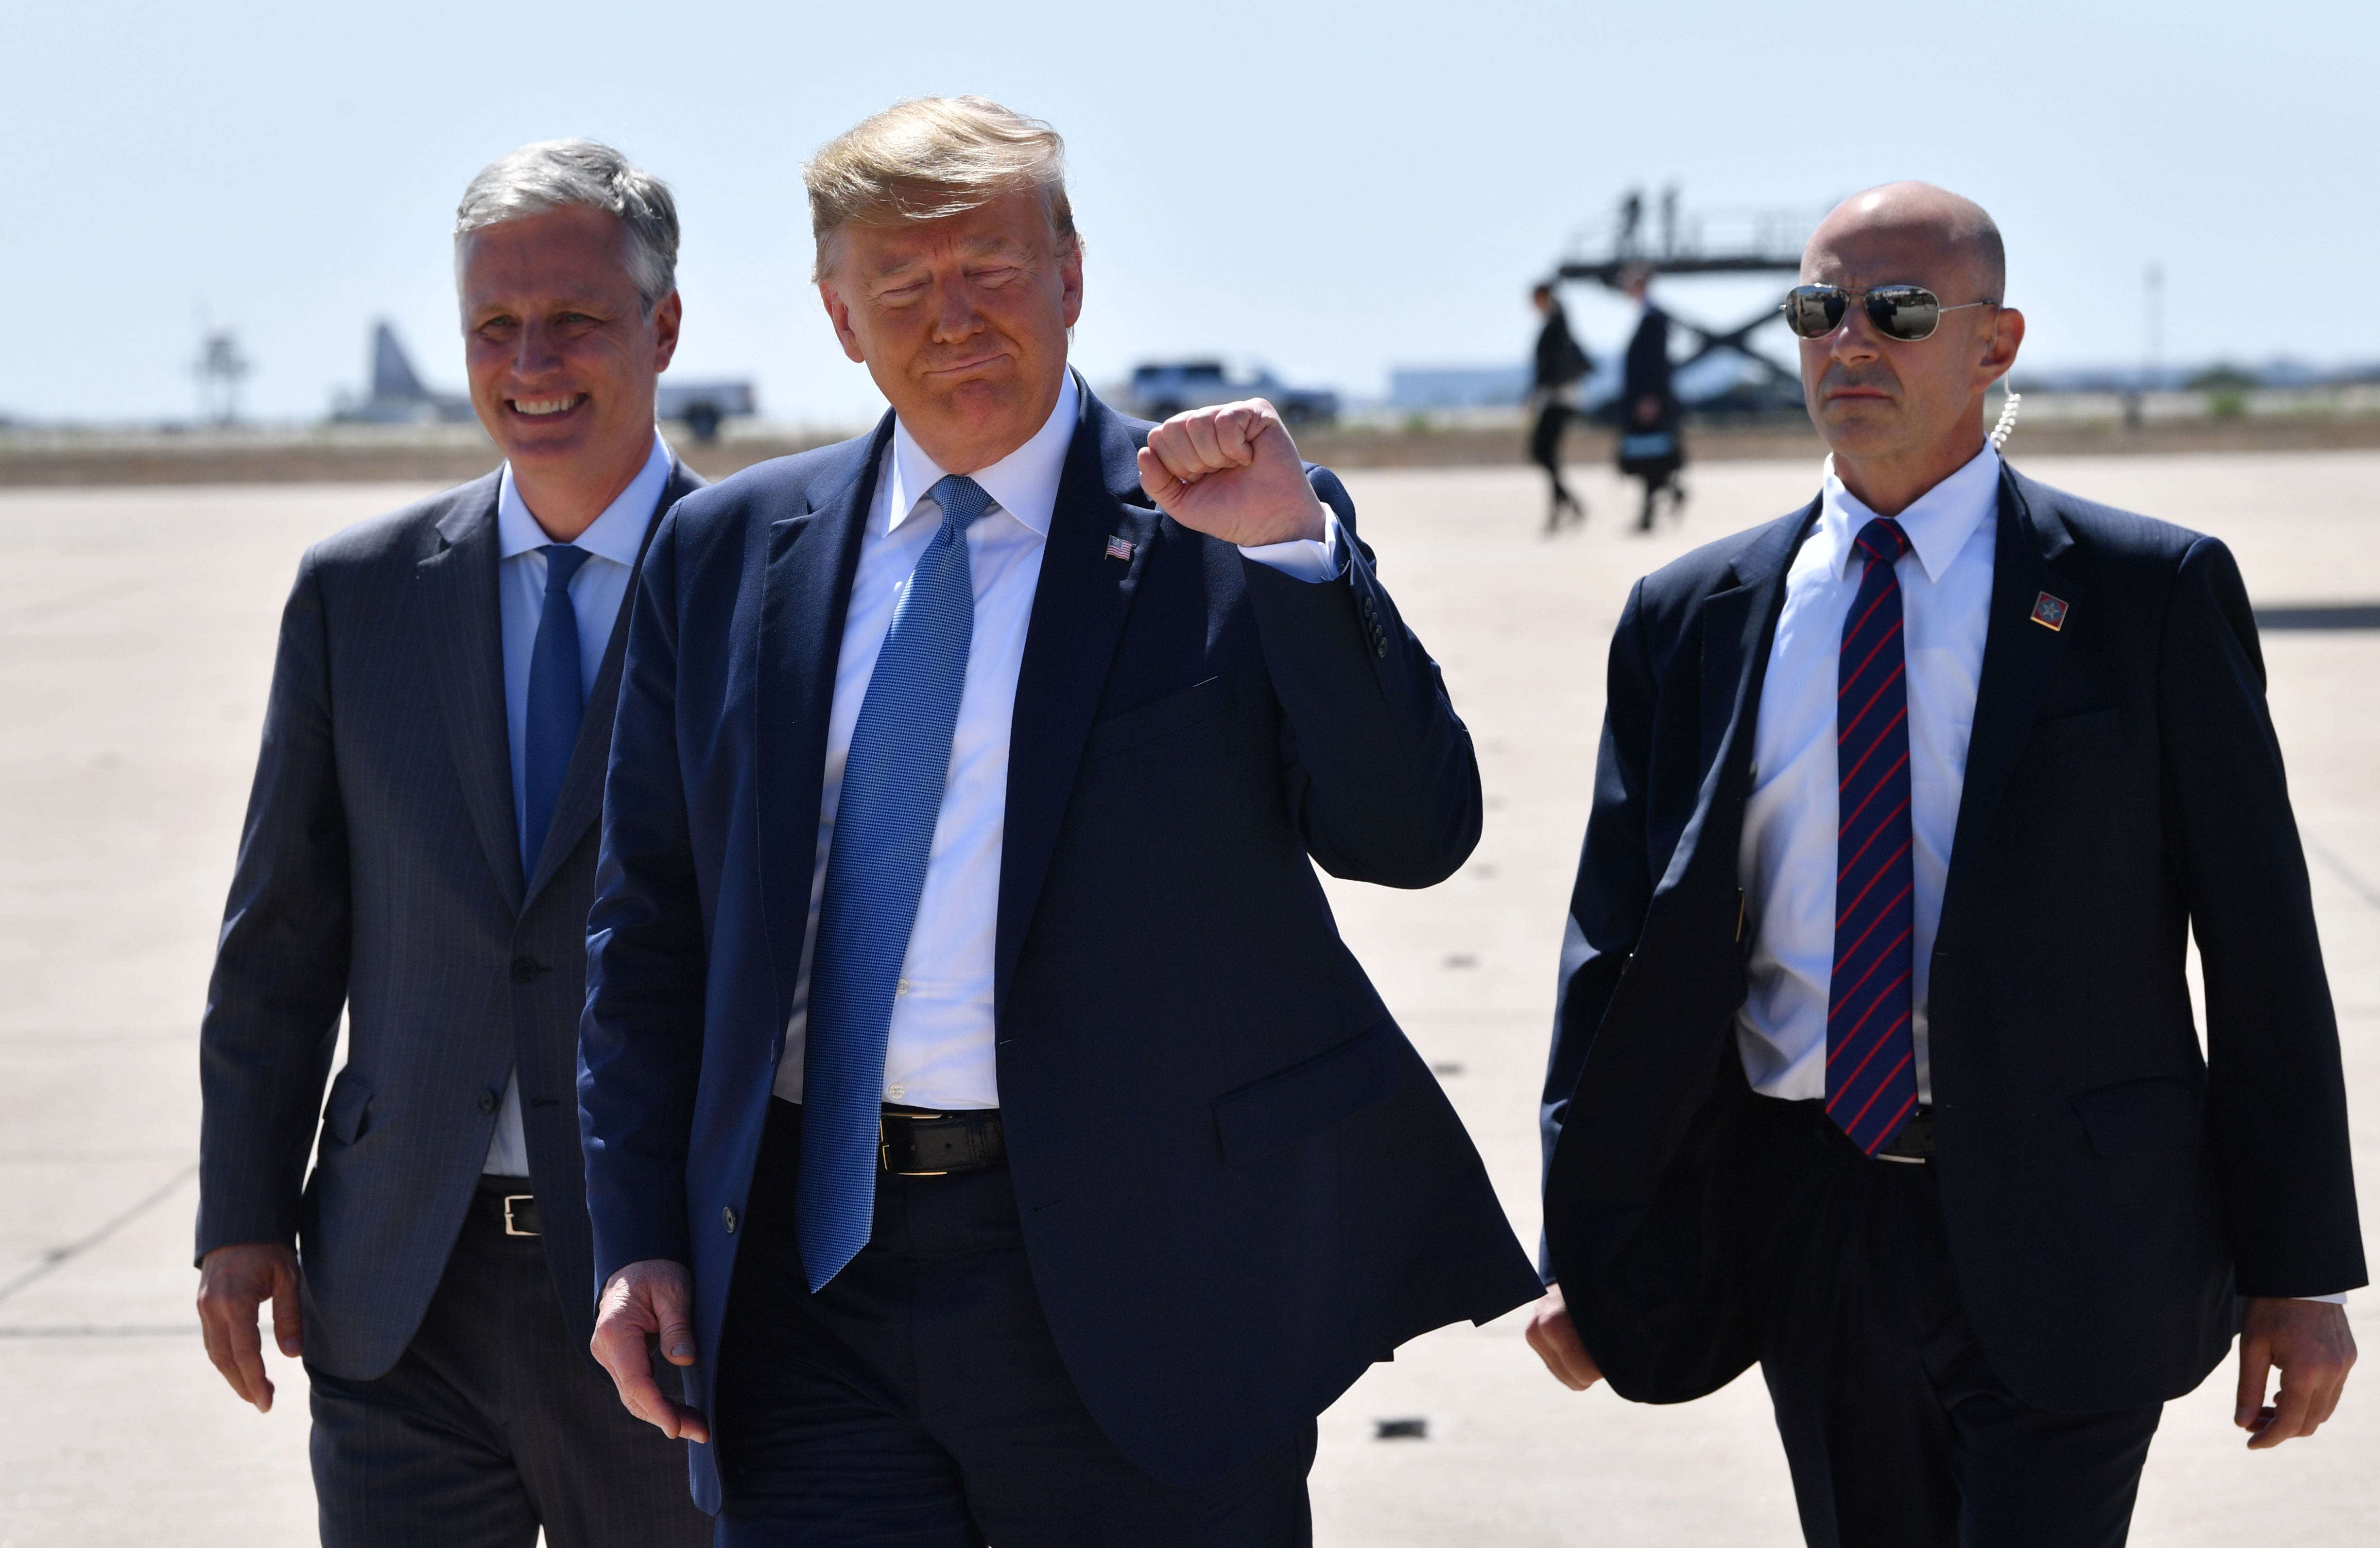 Donald Trump gesticula durante su visita a la frontera cerca de San Diego, California. (Foto Prensa Libre: AFP)